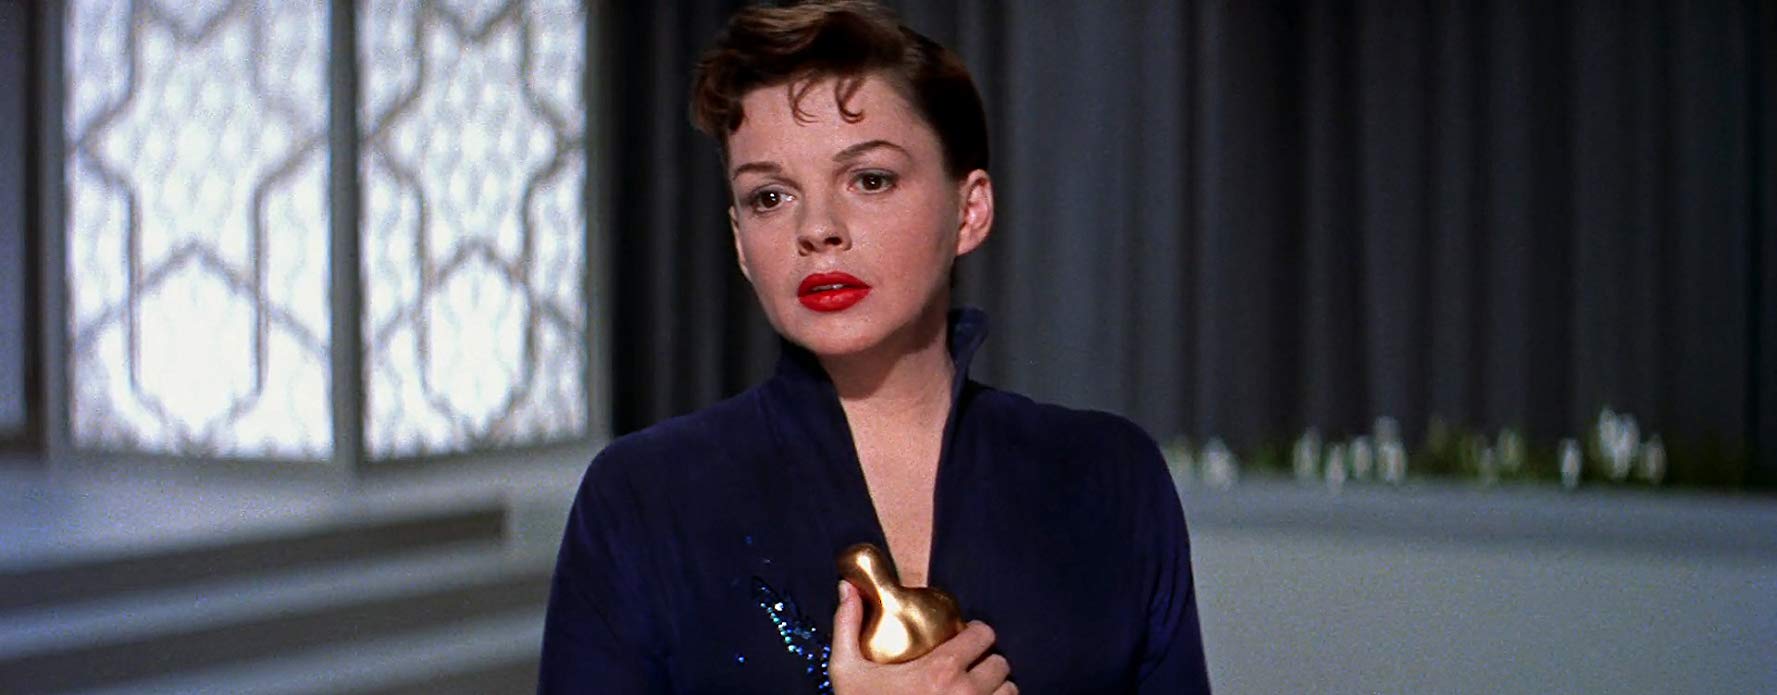 Reneé Zellweger es Judy Garland en 'Judy'; quién fue y qué películas hizo este mito de Hollywood